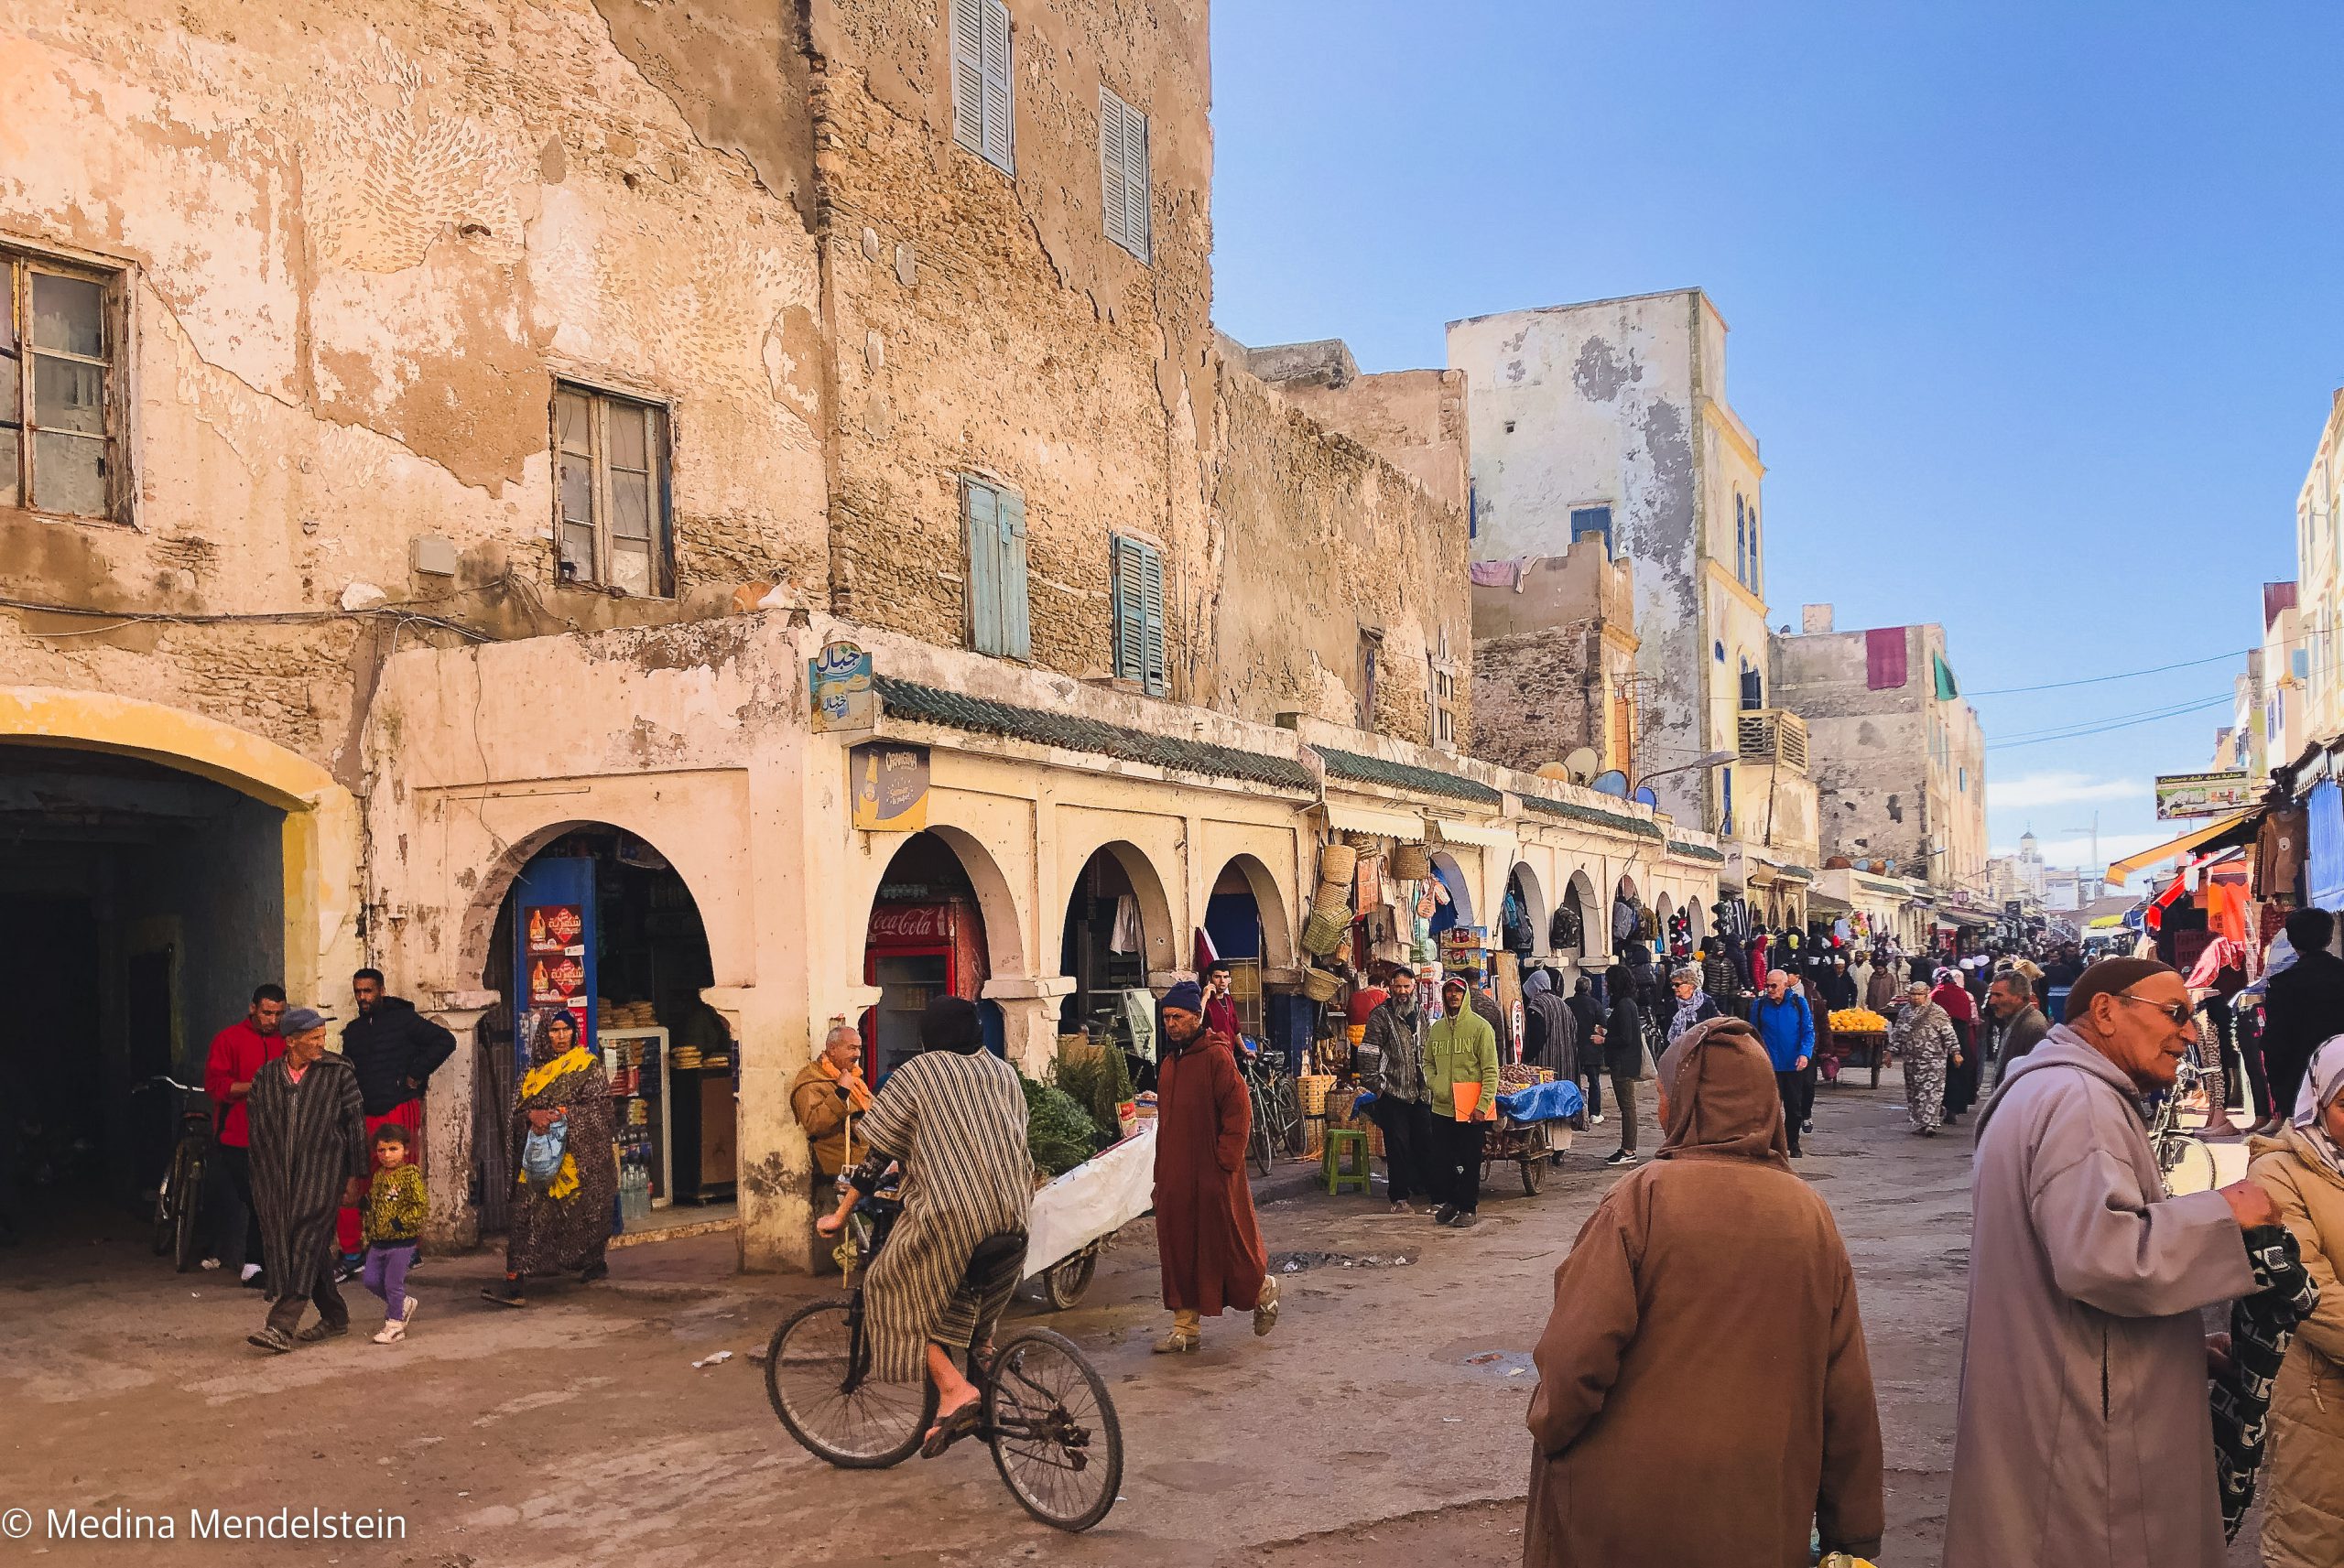 Fotografie aus Marokko, Essaouira: Einkaufsstraße mit vielen Menschen. An den Straßenrändern sind Verkaufsläden.